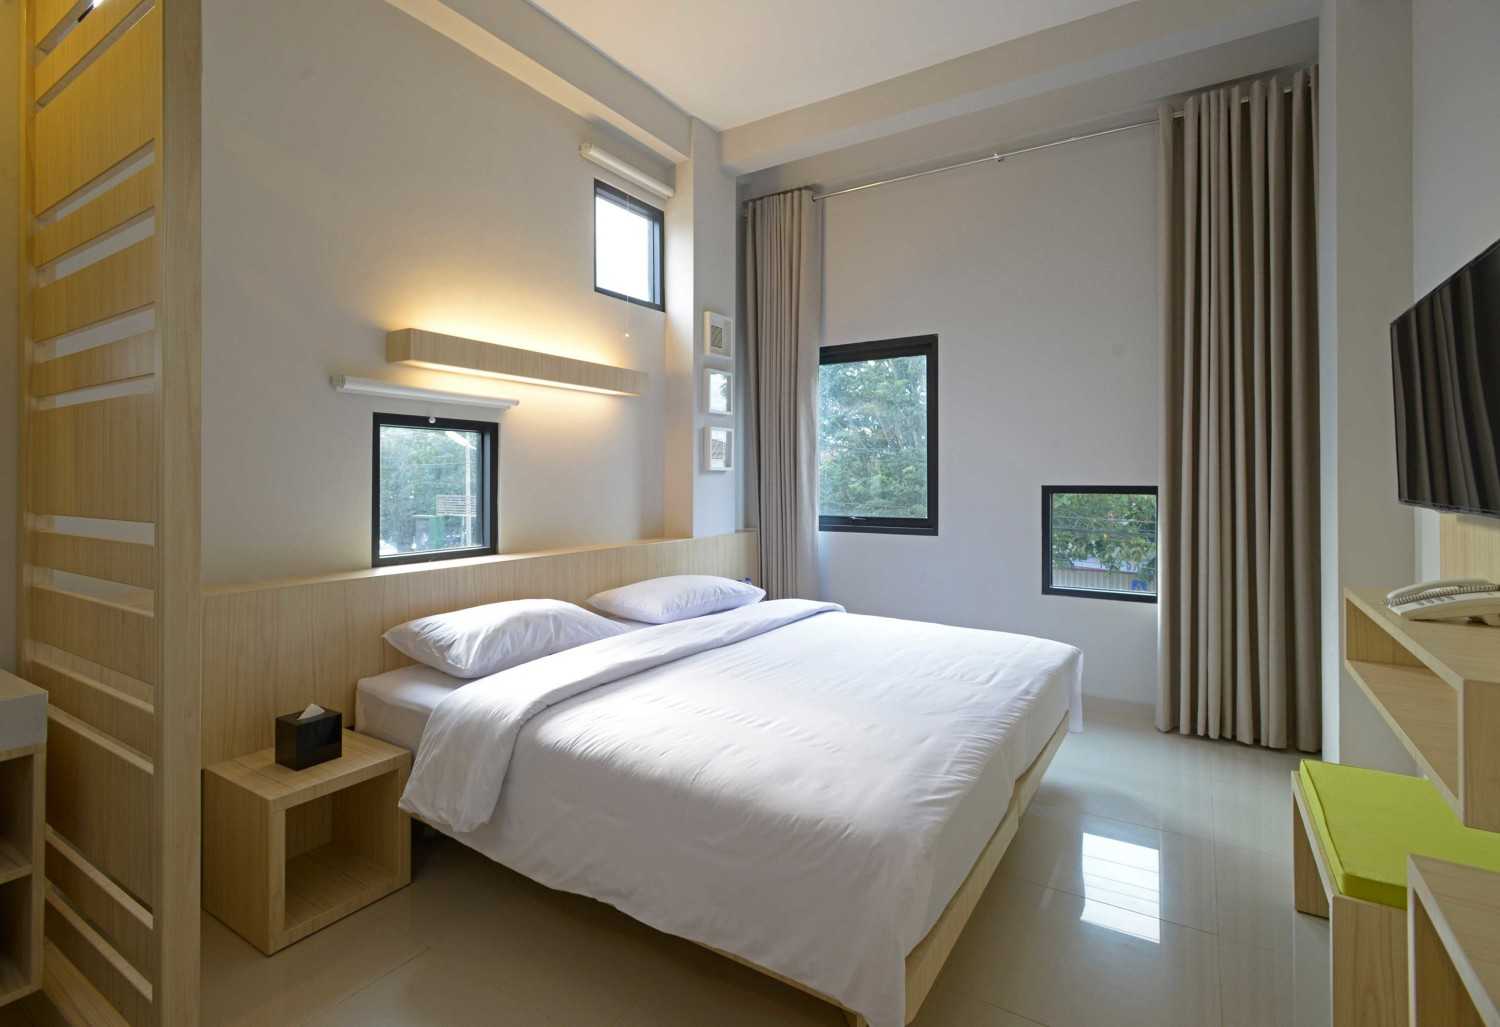 82 New Dekorasi Kamar Tidur Seperti Hotel Paling Populer di Dunia